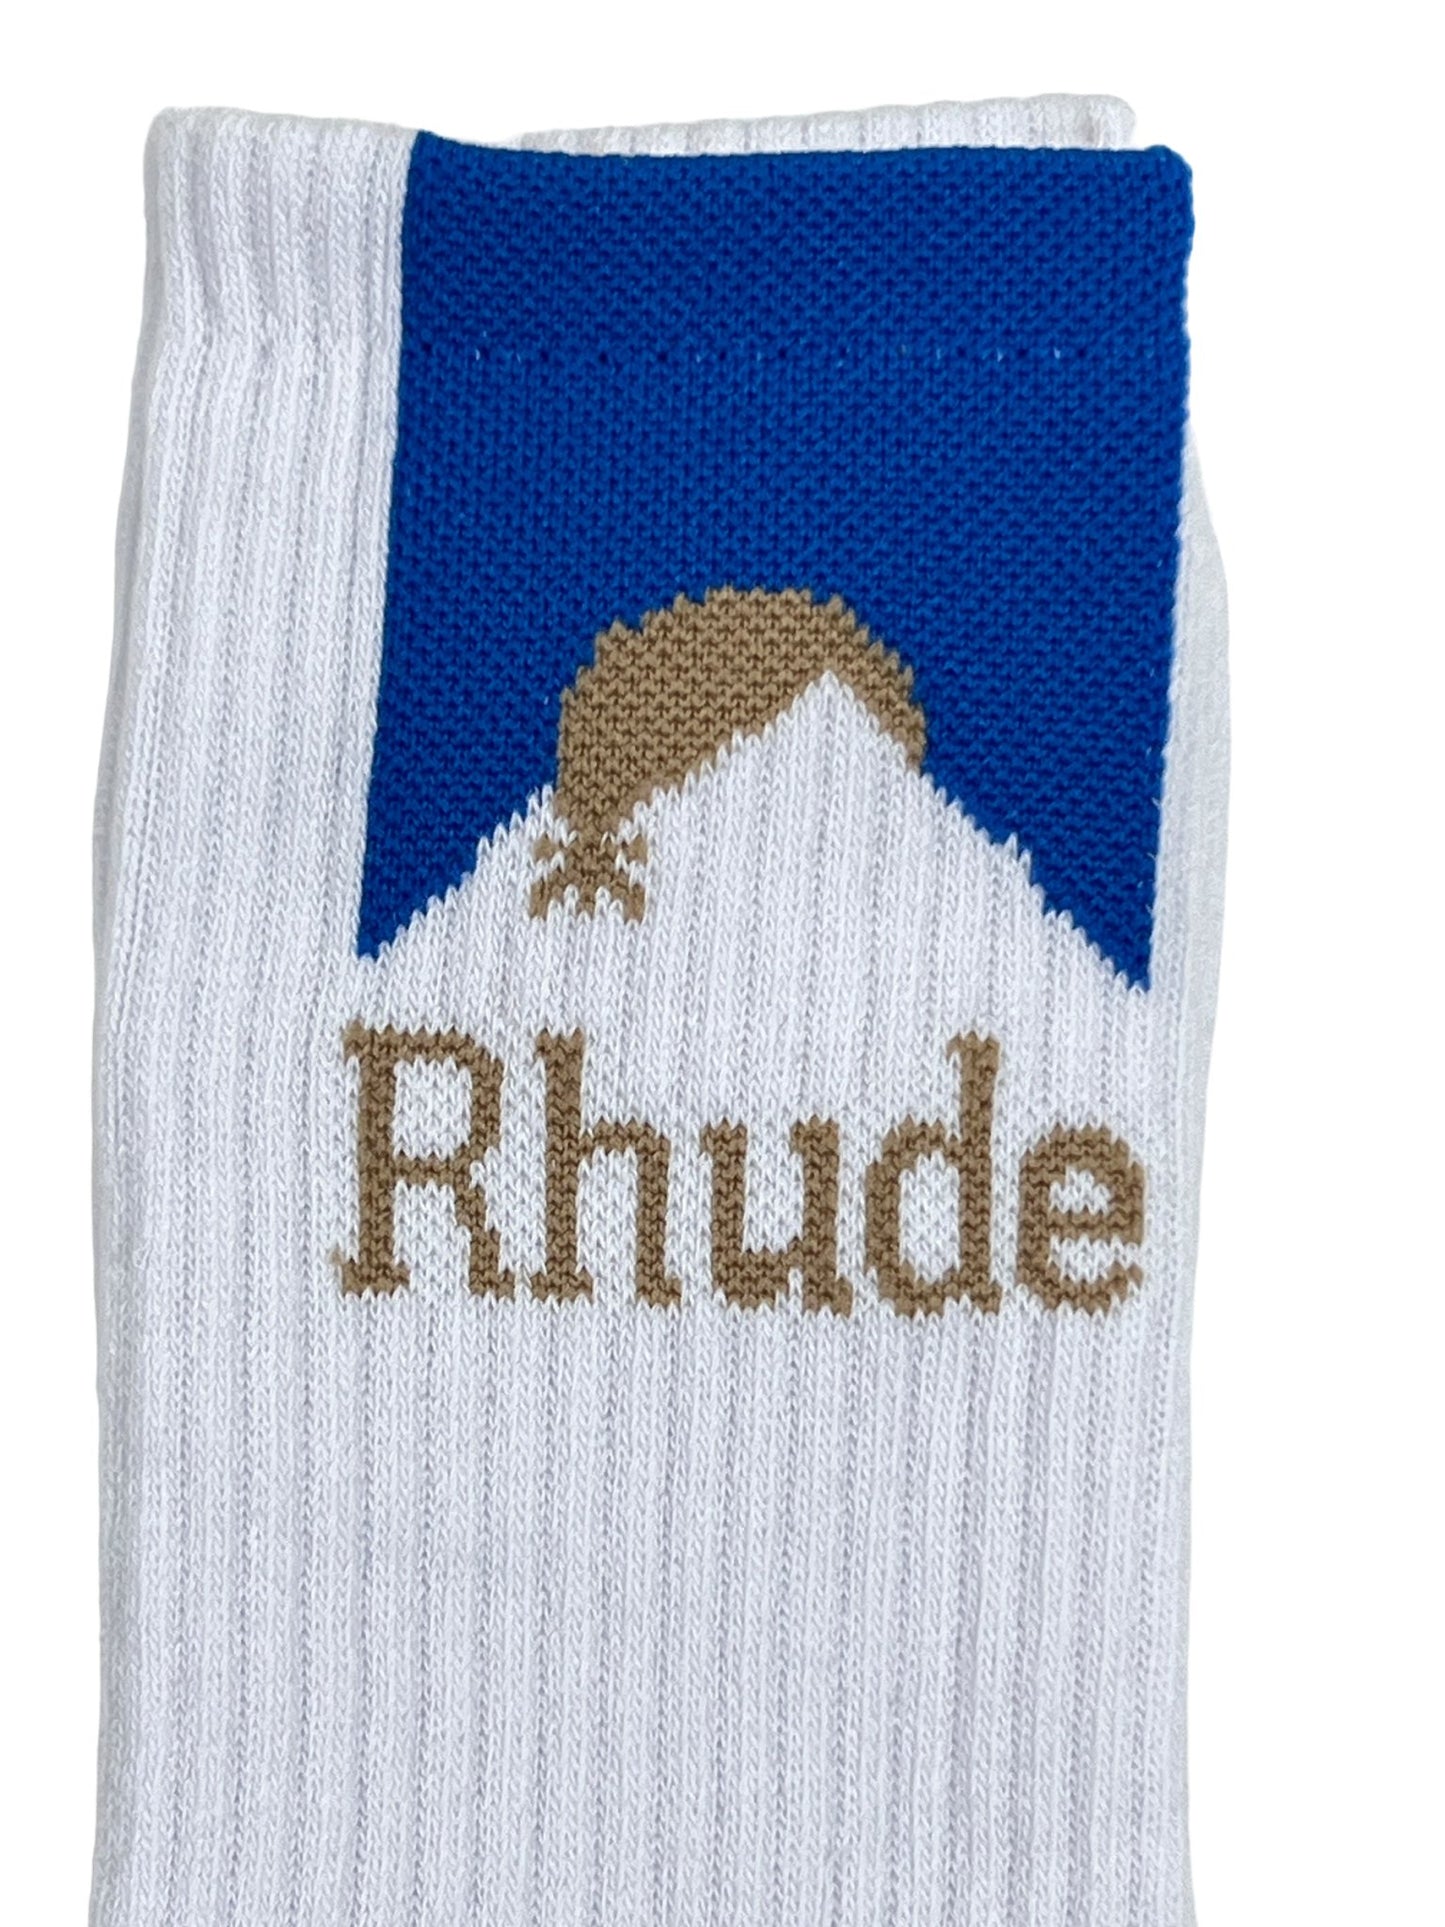 Probus RHUDE MOONLIGHT SOCK WHITE/BLUE RHUDE MOONLIGHT SOCK WHITE/BLUE YELLOW